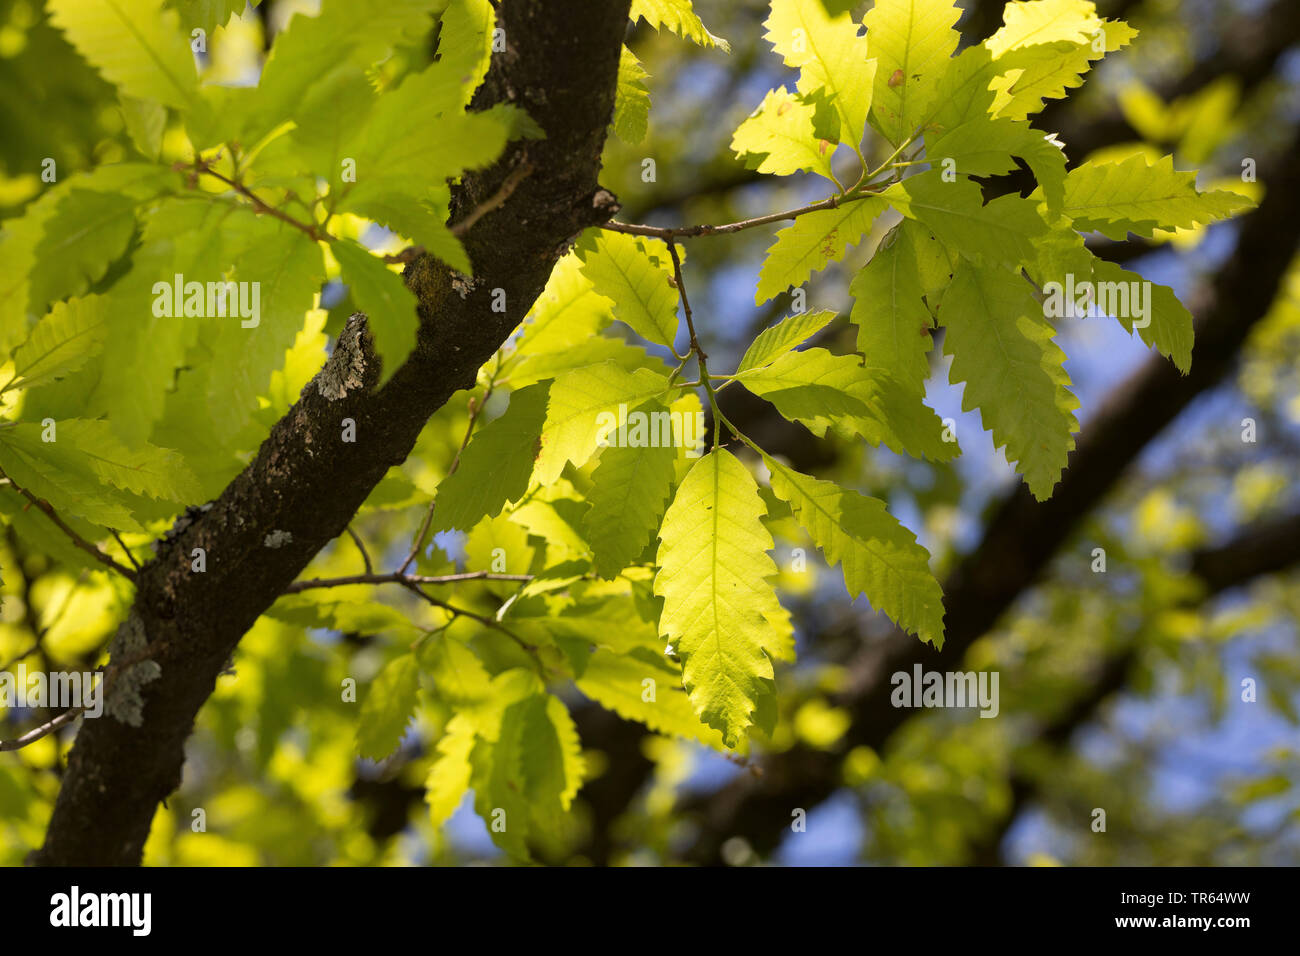 Lebanon oak (Quercus libani, Quercus vesca), branch in backlight Stock Photo